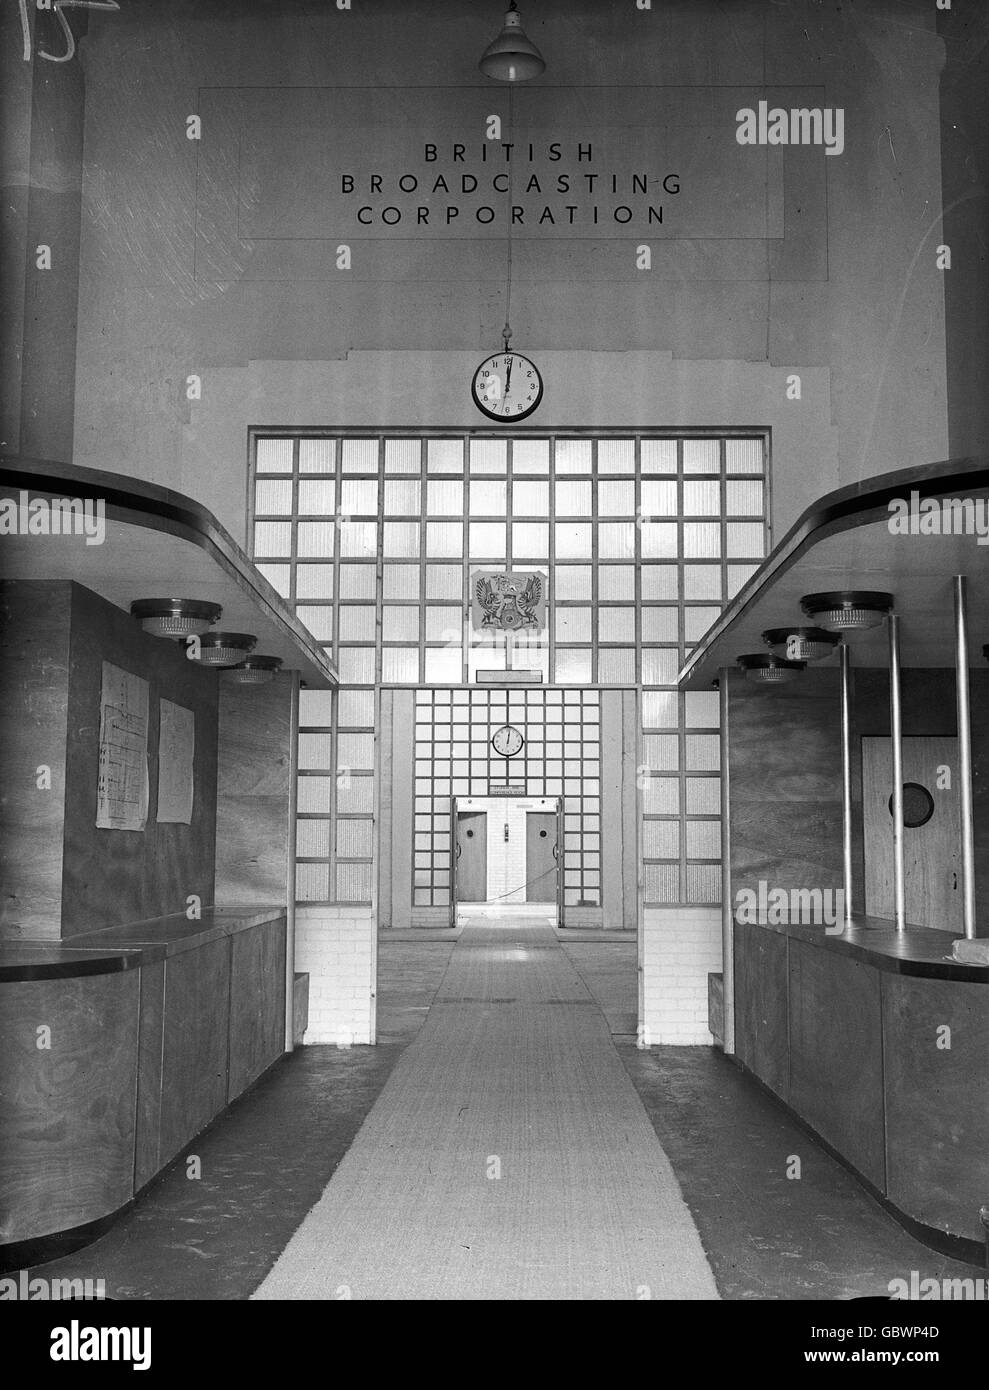 Olympische Spiele - BBC Broadcasting Center für die Olympischen Spiele 1948 in London - Palace of Arts, Wembley. Die Außenseite des BBC Broadcasting Center im Palast der Künste, Wembley Stockfoto